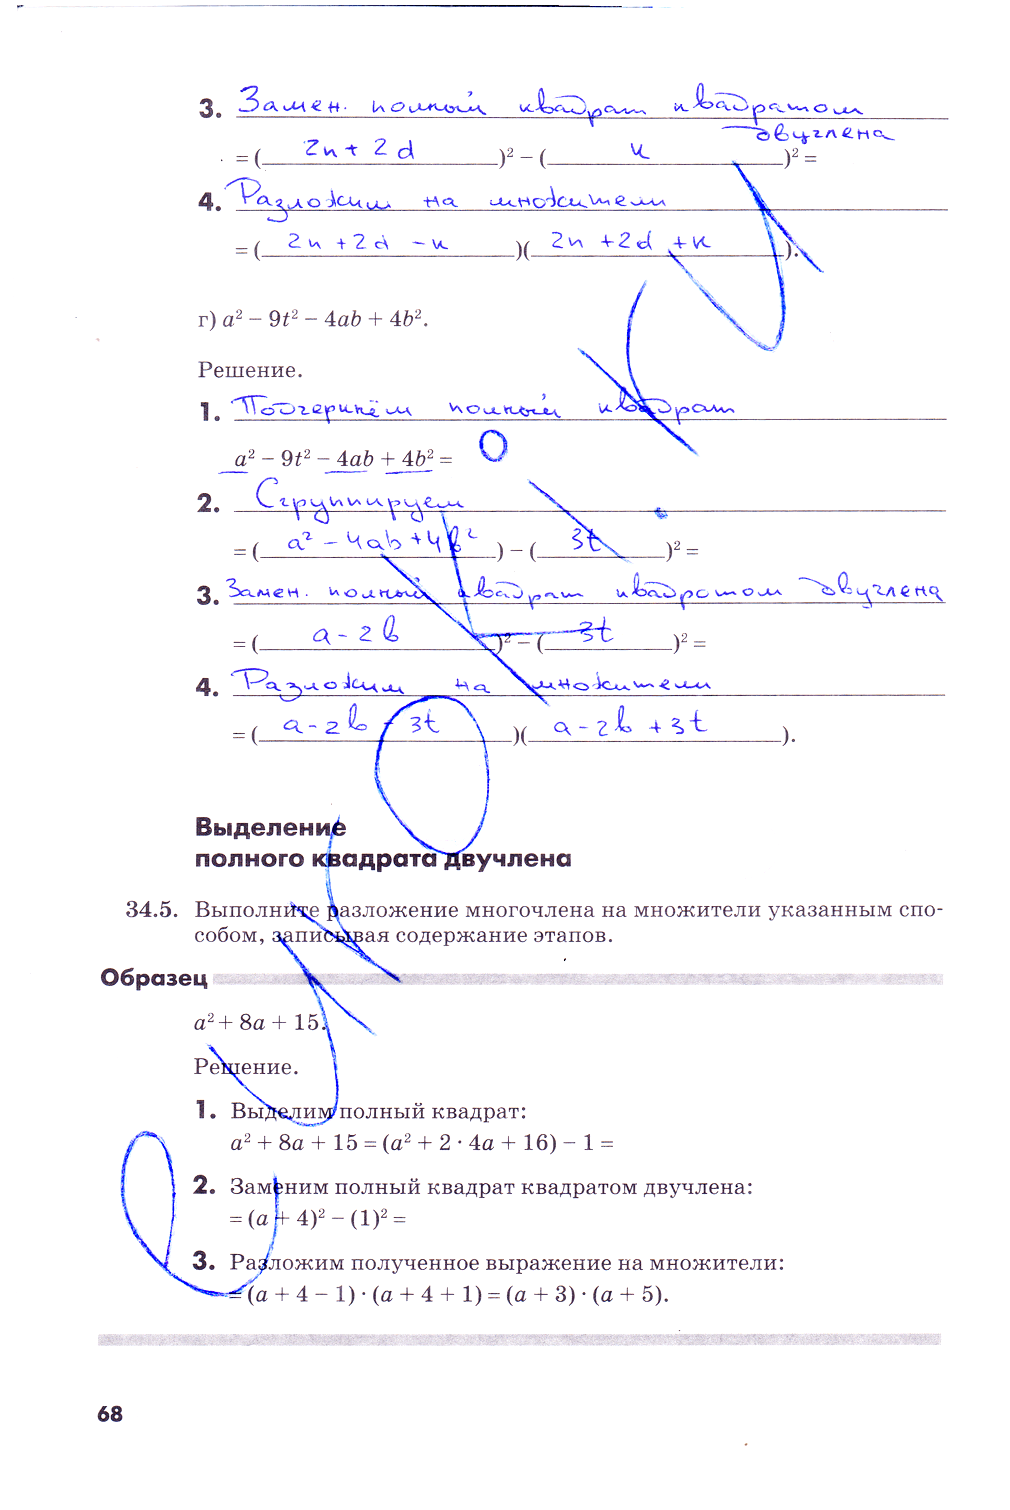 гдз 7 класс рабочая тетрадь часть 2 страница 68 алгебра Зубарева, Мильштейн